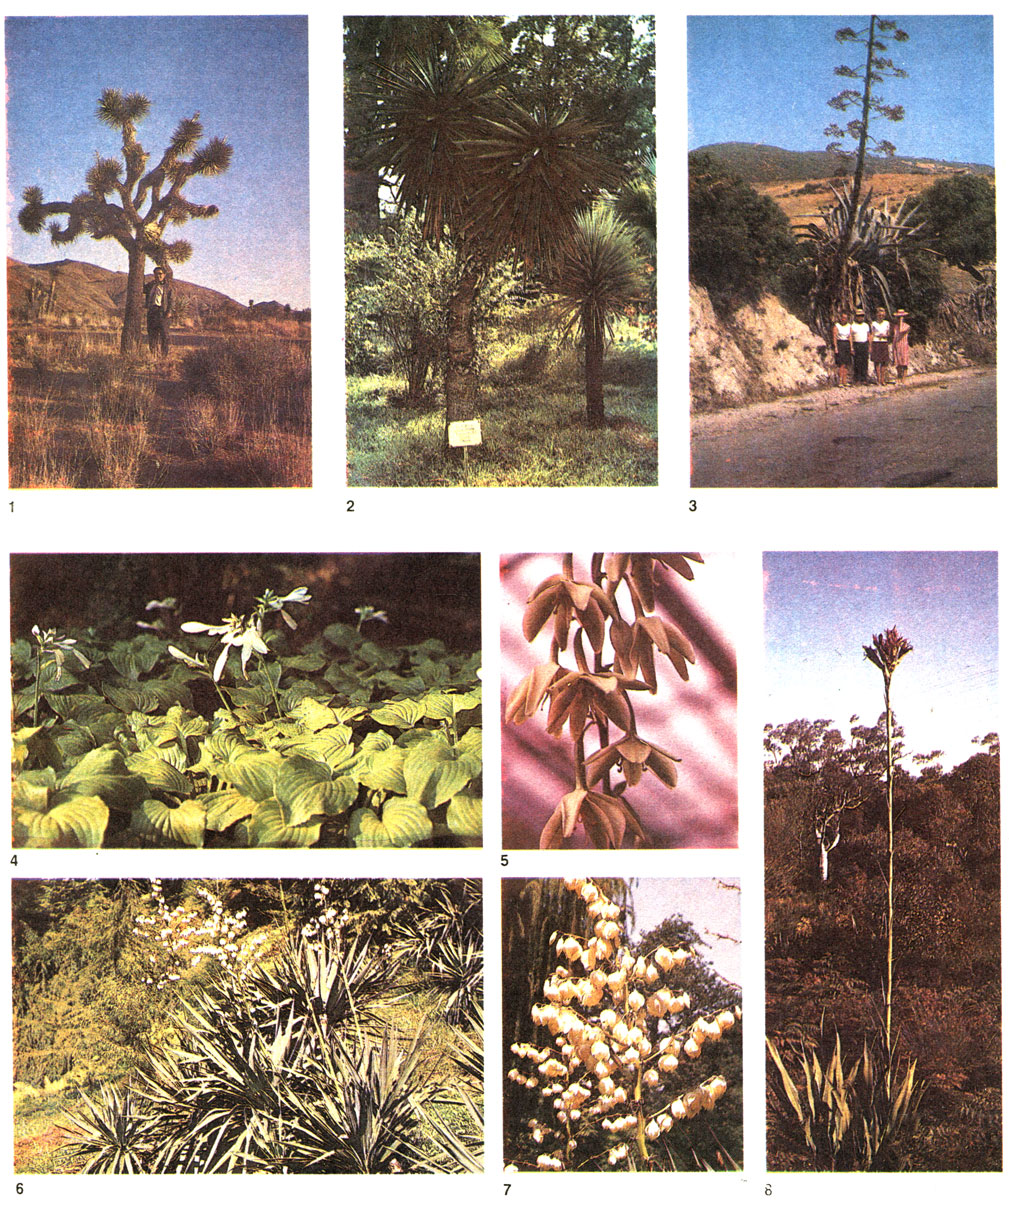 Таблица 18. Агавовые и дориантовые: 1 - юкка коротколистная (Yucca brevifolia), пустыня Мохаве, Калифорния, США; 2 - юкка Трекуля (Y. treculeana), Сухумский ботанический сад; на заднем плане - юкка алоэлистная (Y. aloifolia); 3 - агава американская (Agave ameriсаnа) в цвету, Алжир; 4 - хоста подорожниковая (Hosta plantaginea), Крым, Никитский ботанический сад; 5 - фуркрея Селло (Furcraea selloa), оранжерея Ботанического института в Ленинграде; 6 - юкка повислая, форма цельная (Yucca flaccida f. integra), Батумский ботанический сад; 7 - соцветие юкки повислой, форма цельная; 8 - дориантес высокий (Doryanthes excelsa), Австралия